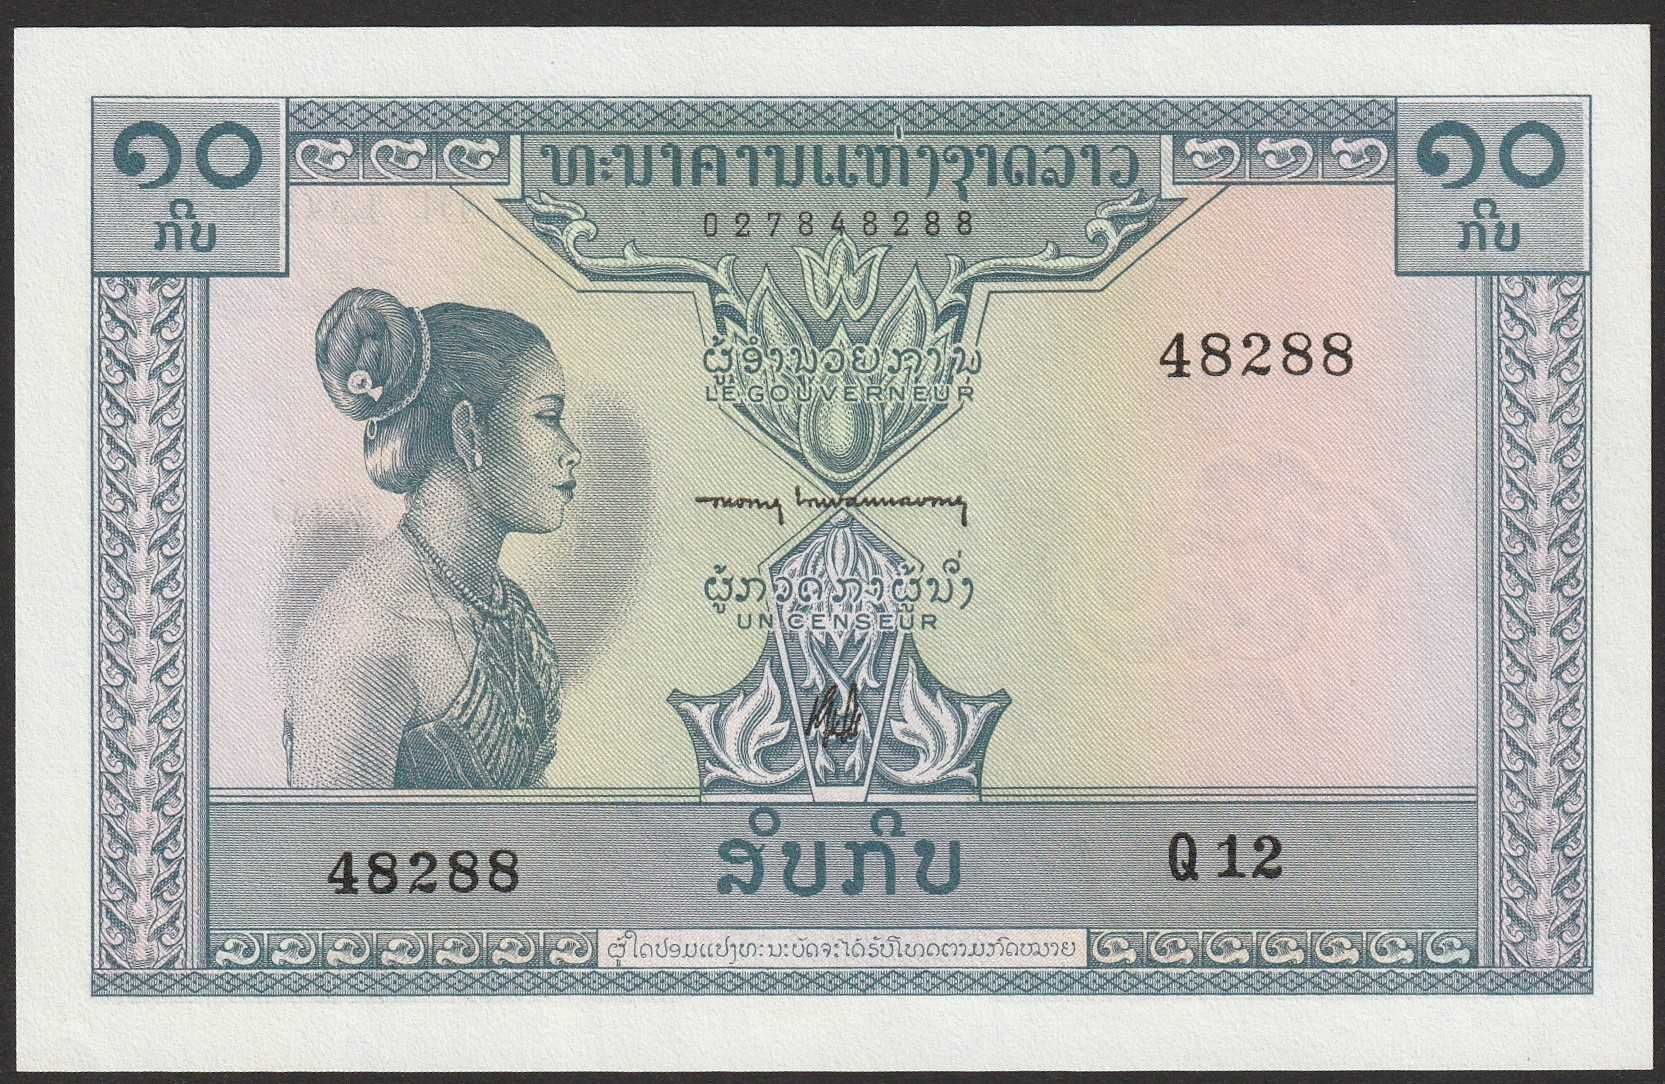 Laos 10 kip 1962 - stan bankowy UNC